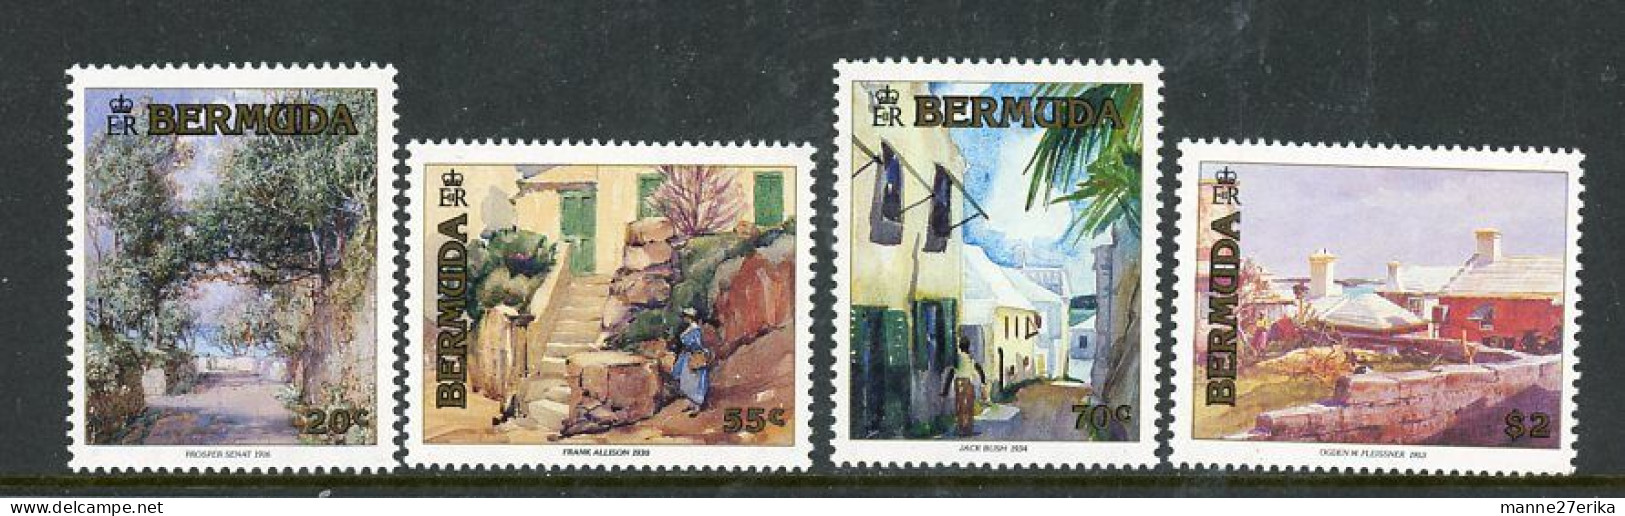 Bermuda MNH 1991 - Bermudes